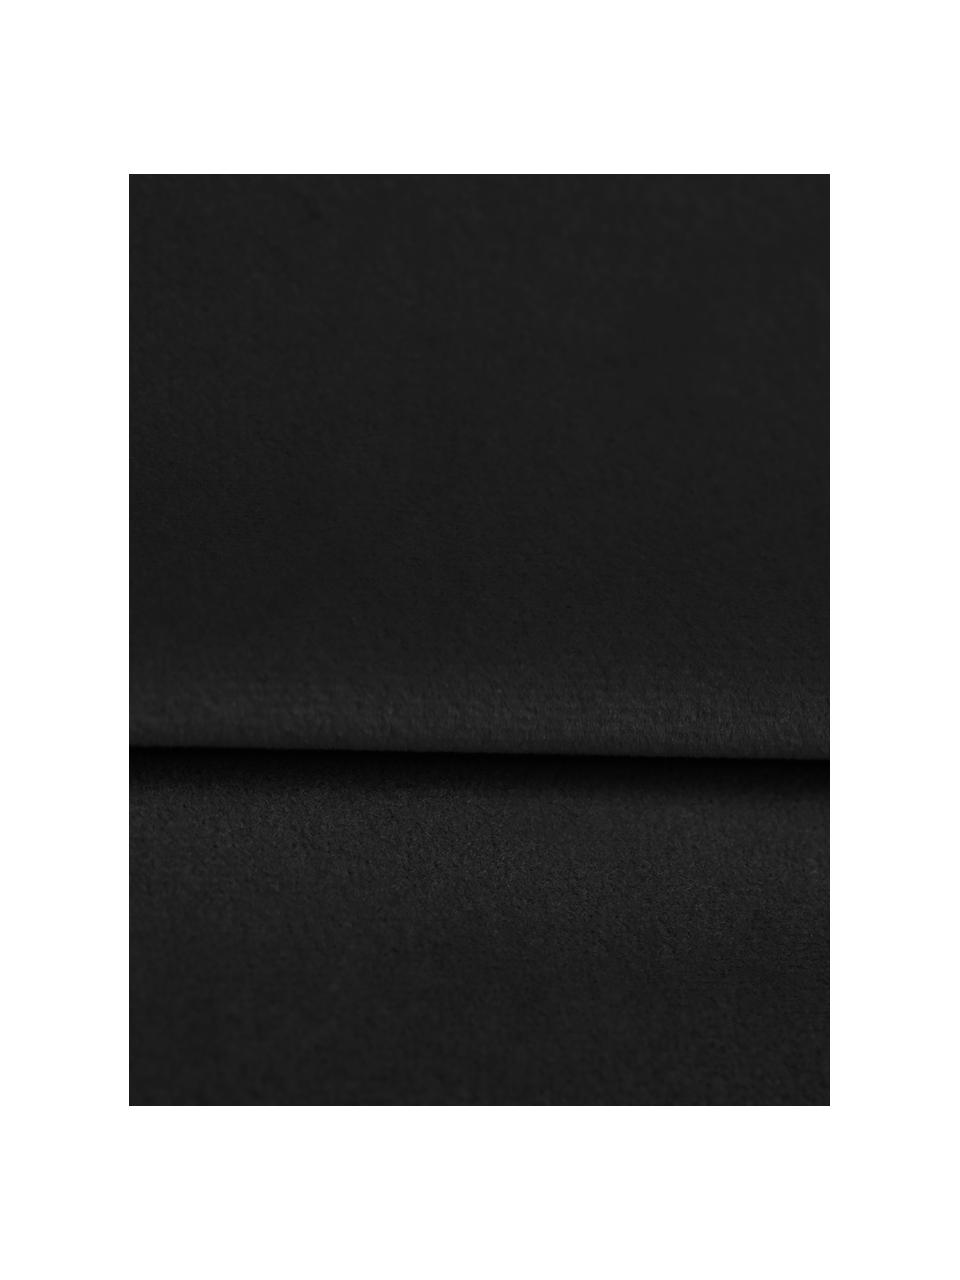 Fluwelen slaapbank Lea (3-zits) met opbergfunctie, Bekleding: polyester fluweel, Poten: gepoedercoat metaal, Fluweel zwart, messingkleurig, B 215 x D 94 cm